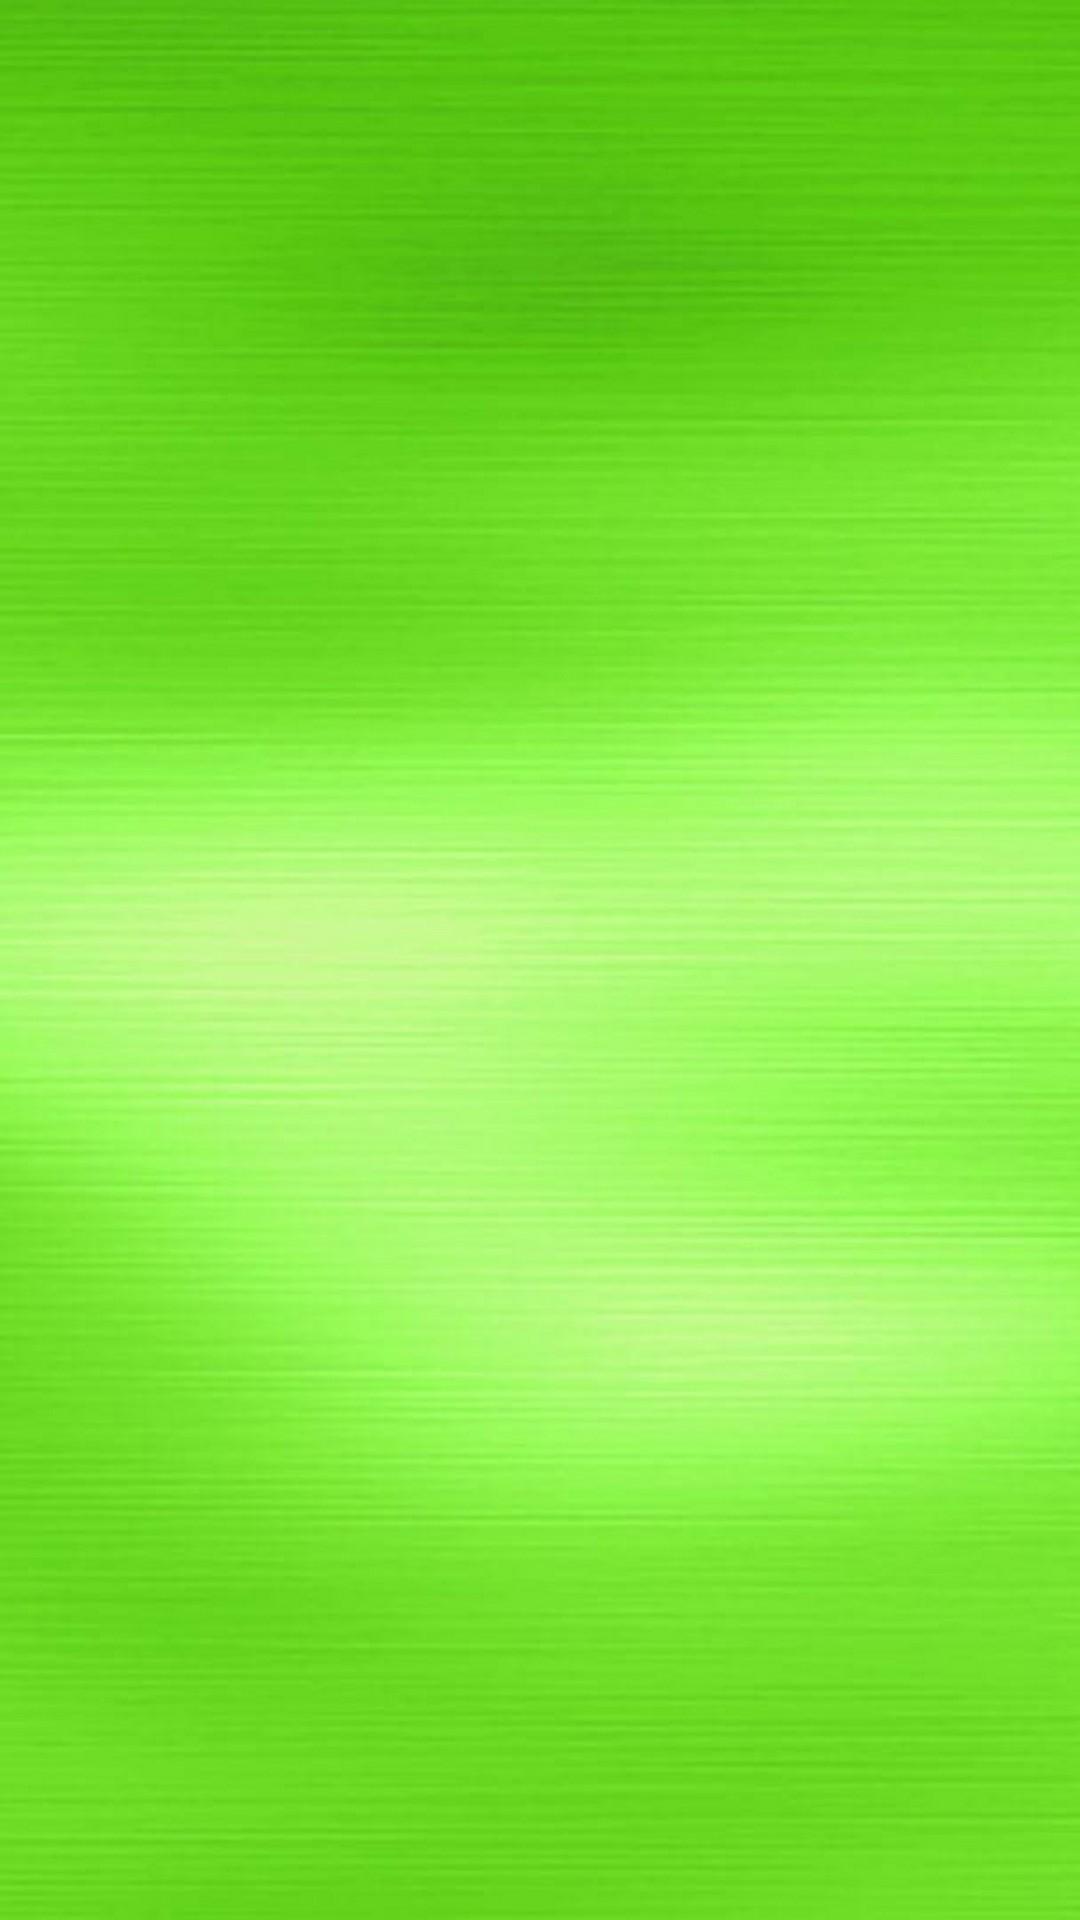 HD green wallpapers  Peakpx